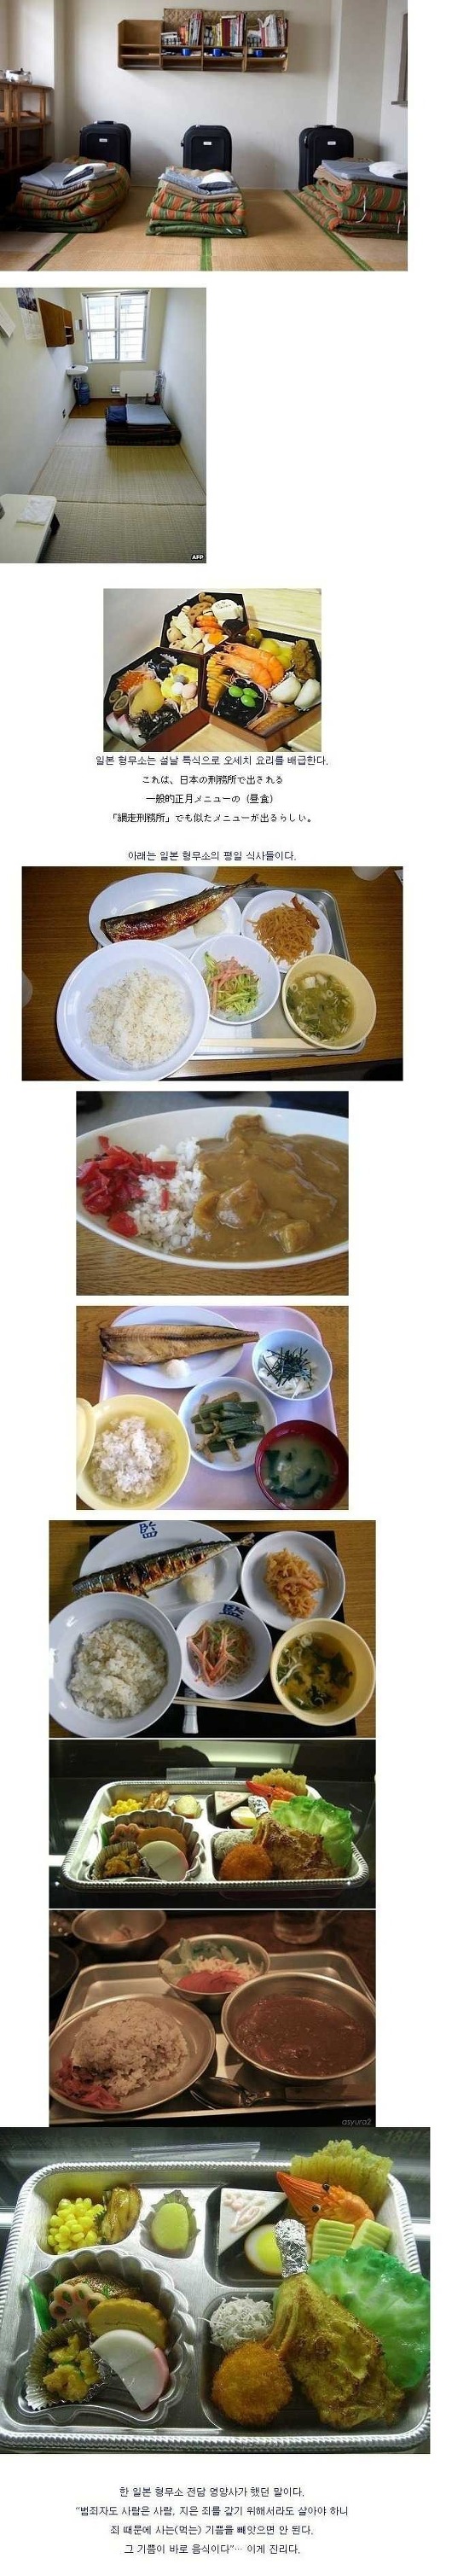 일본 교도소 식단.jpg